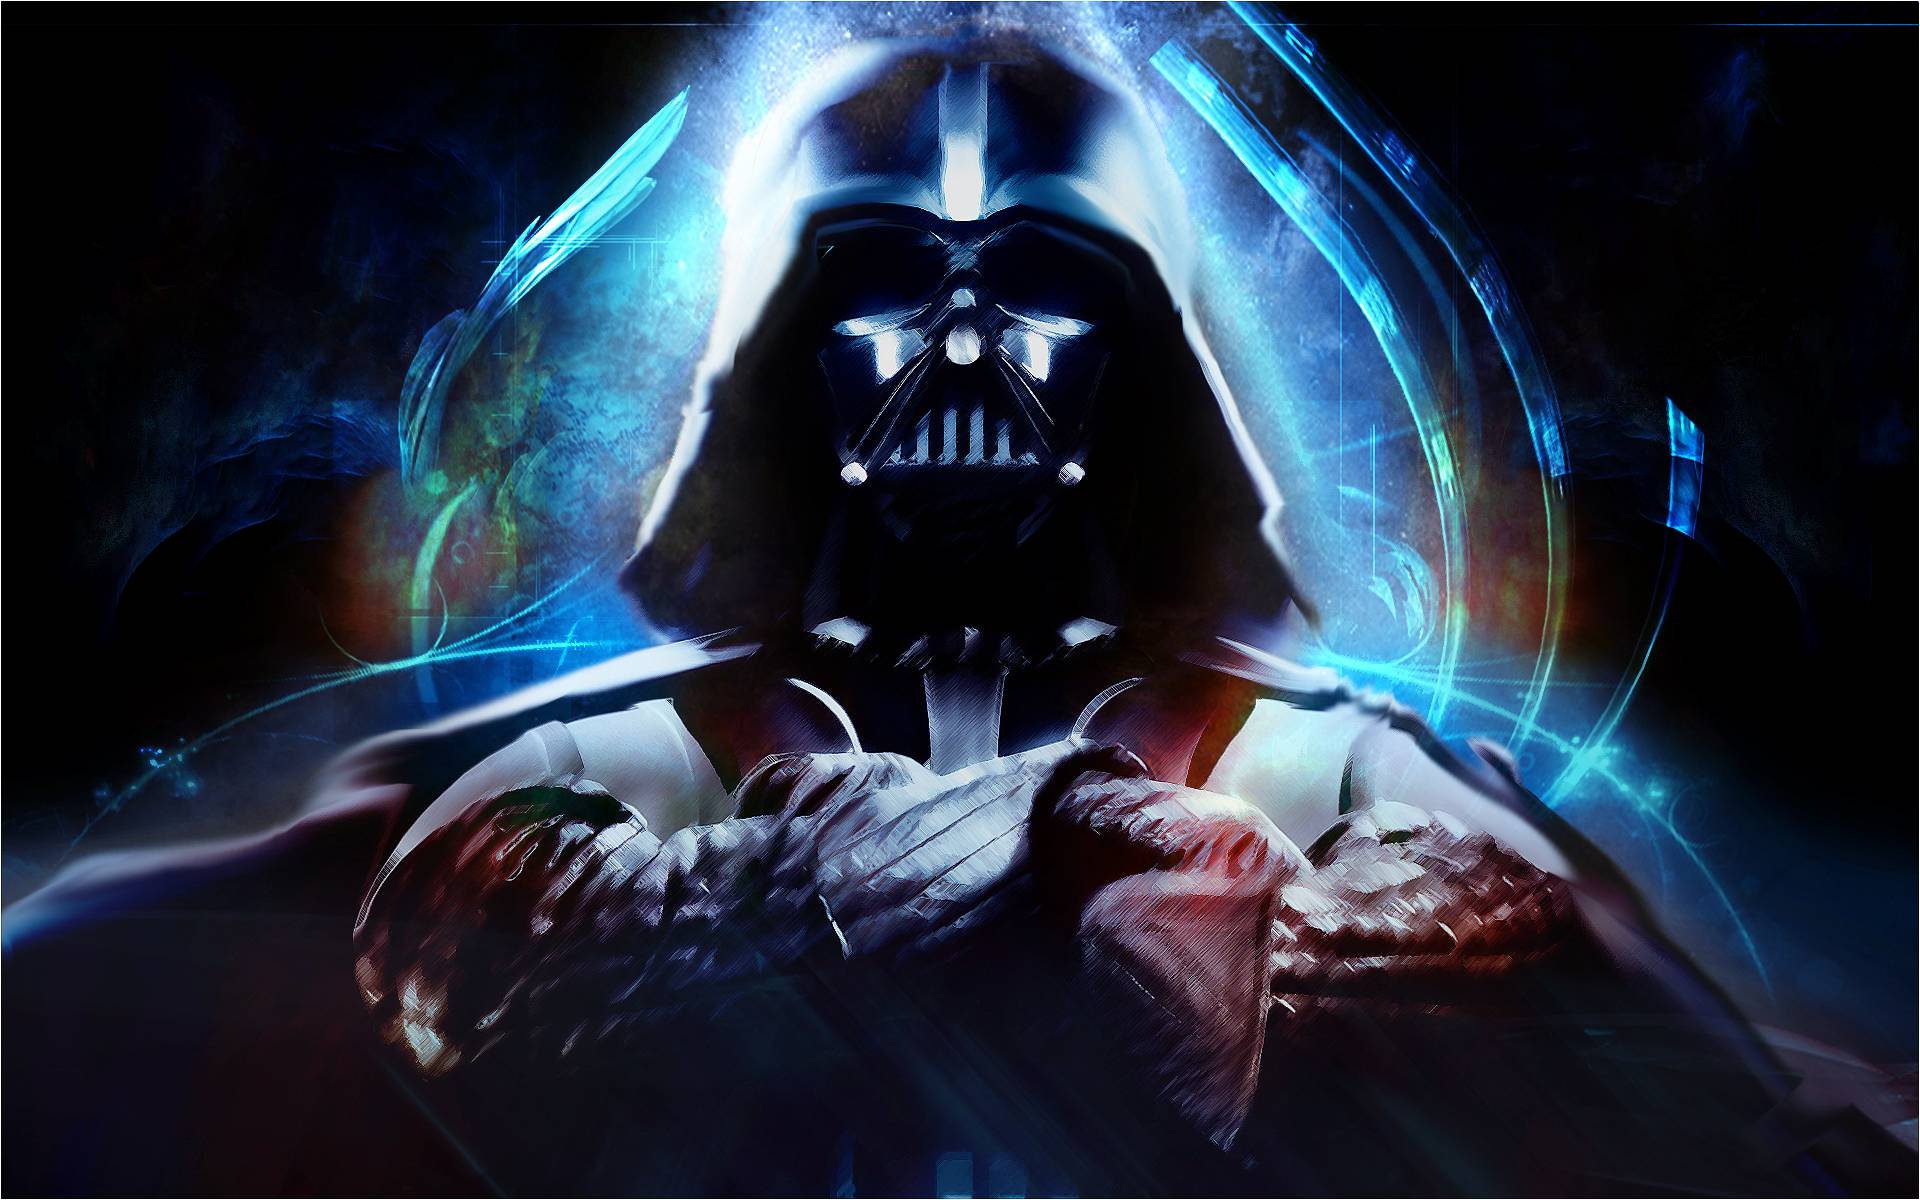 Fondos de pantalla de Star Wars Darth Vader